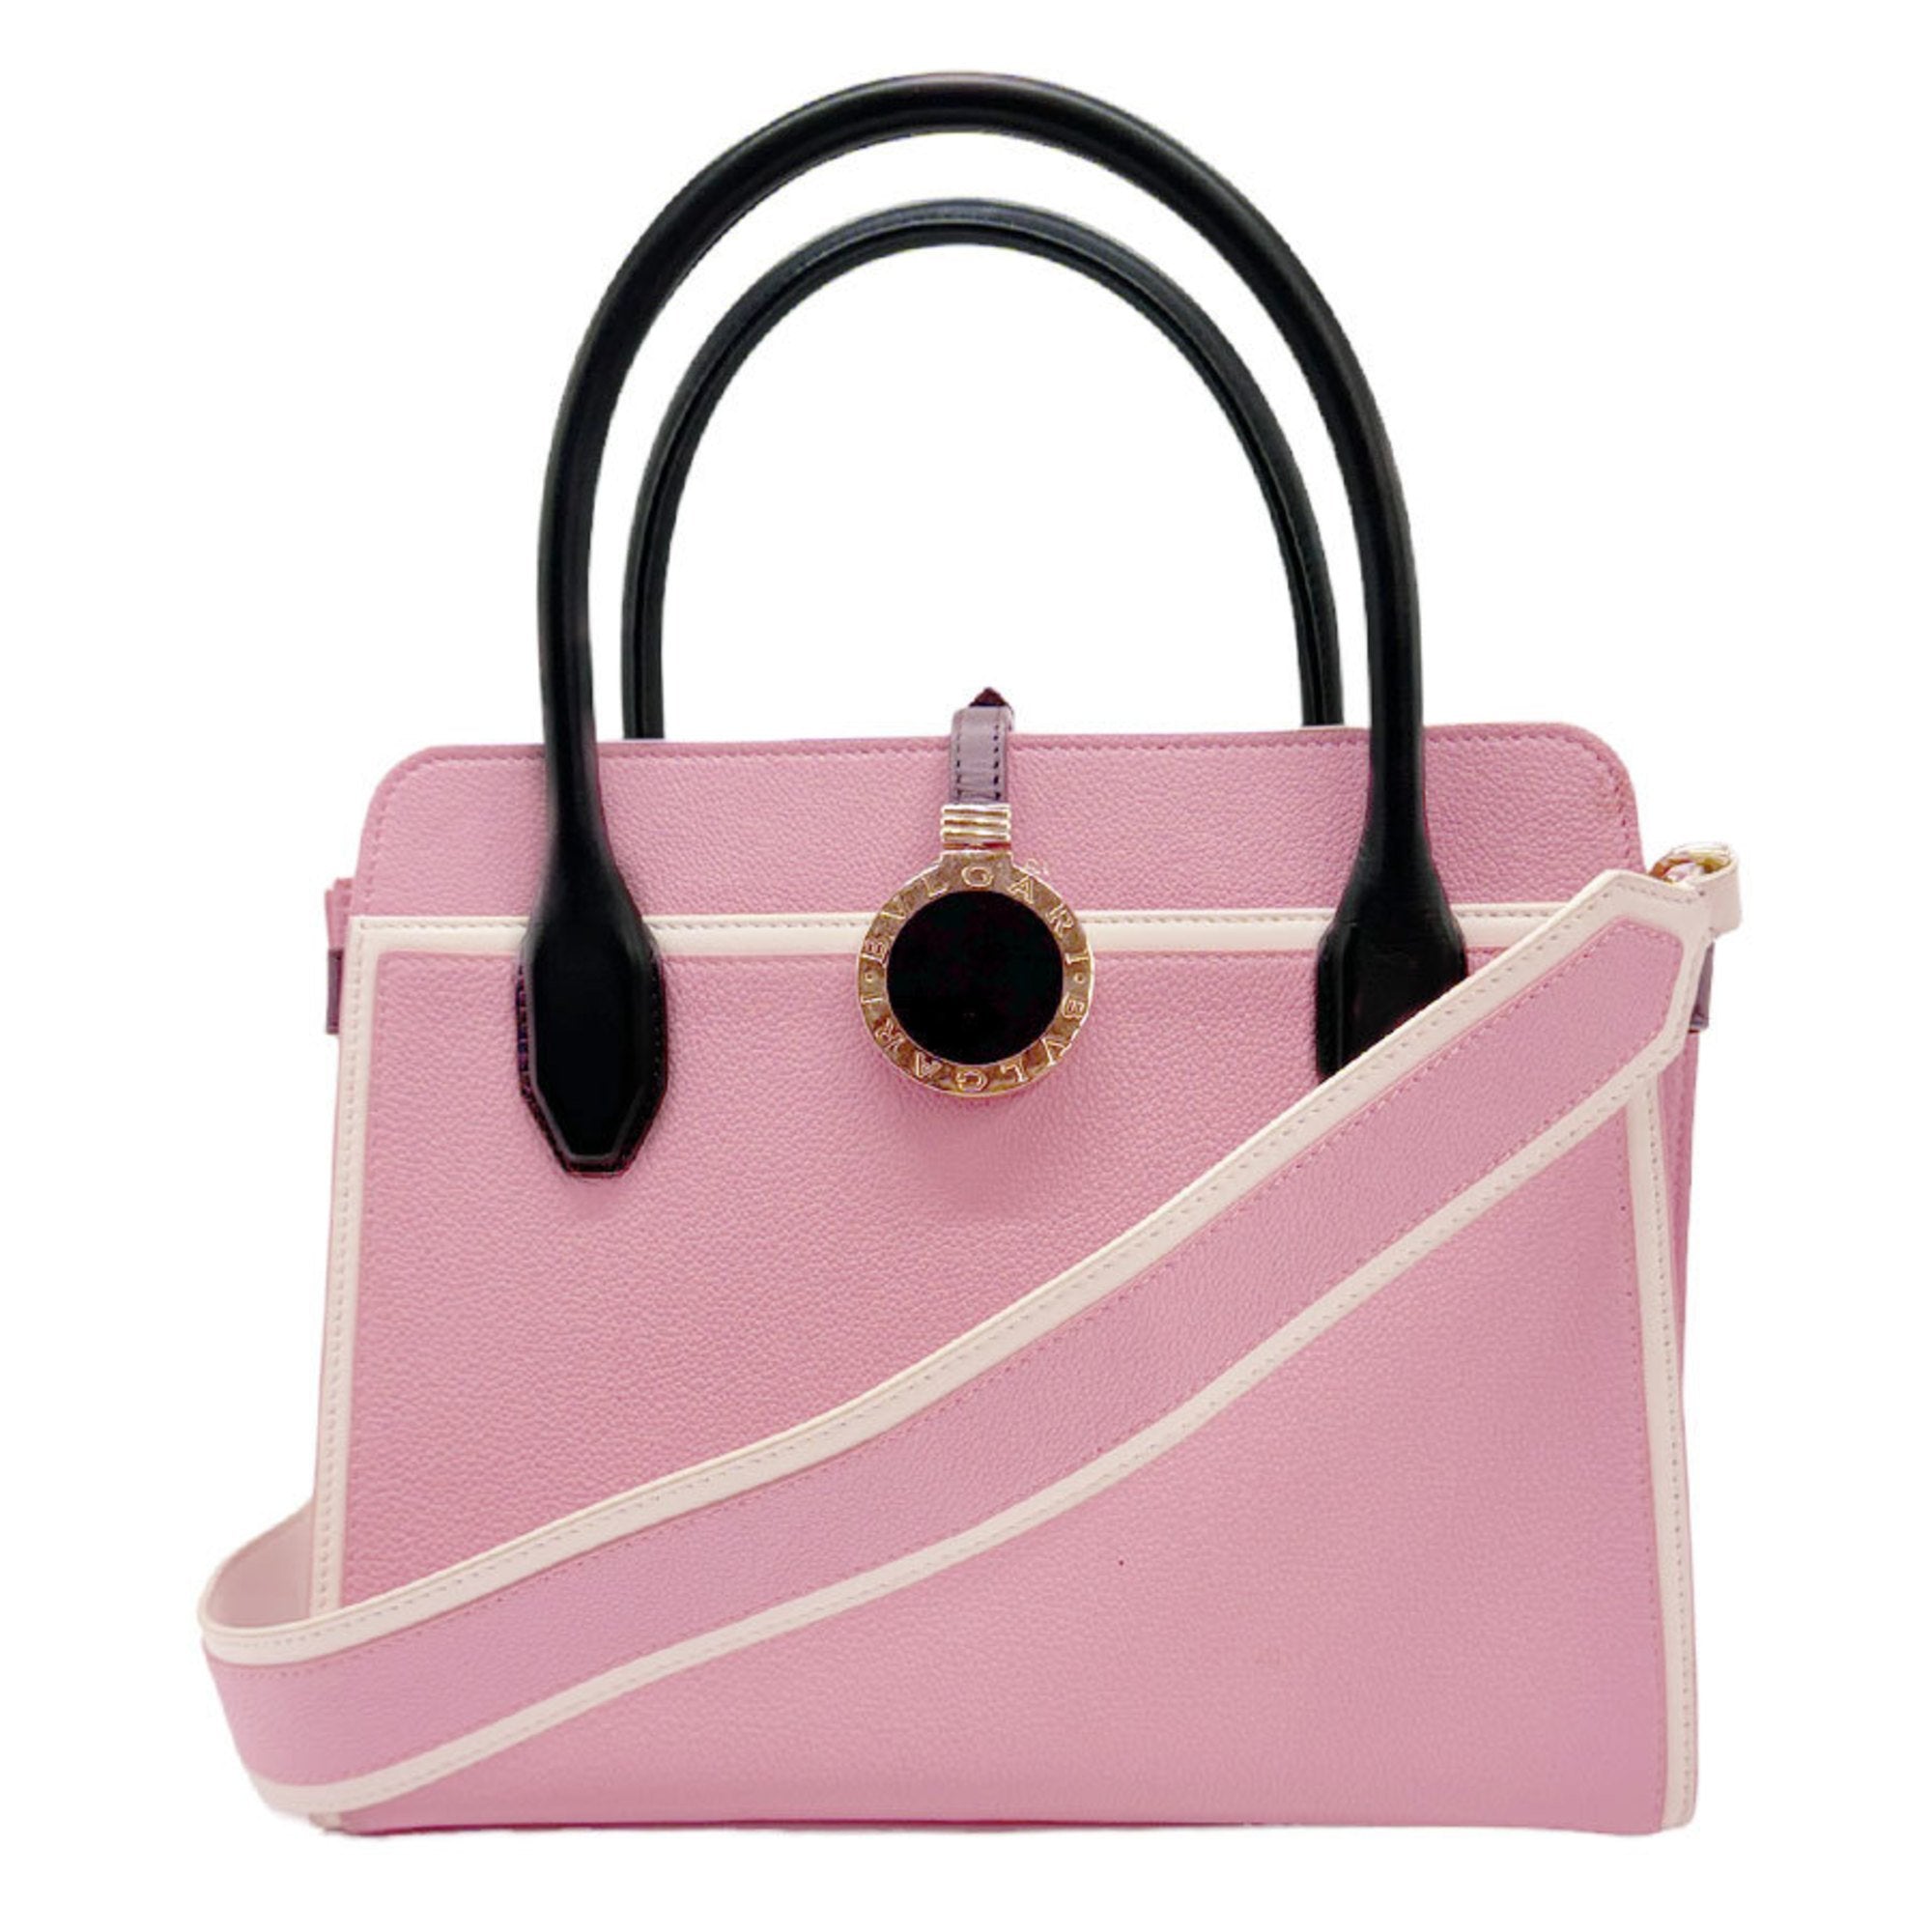 Handbag Shoulder Bag Leather Pink/Black Women's Z0796